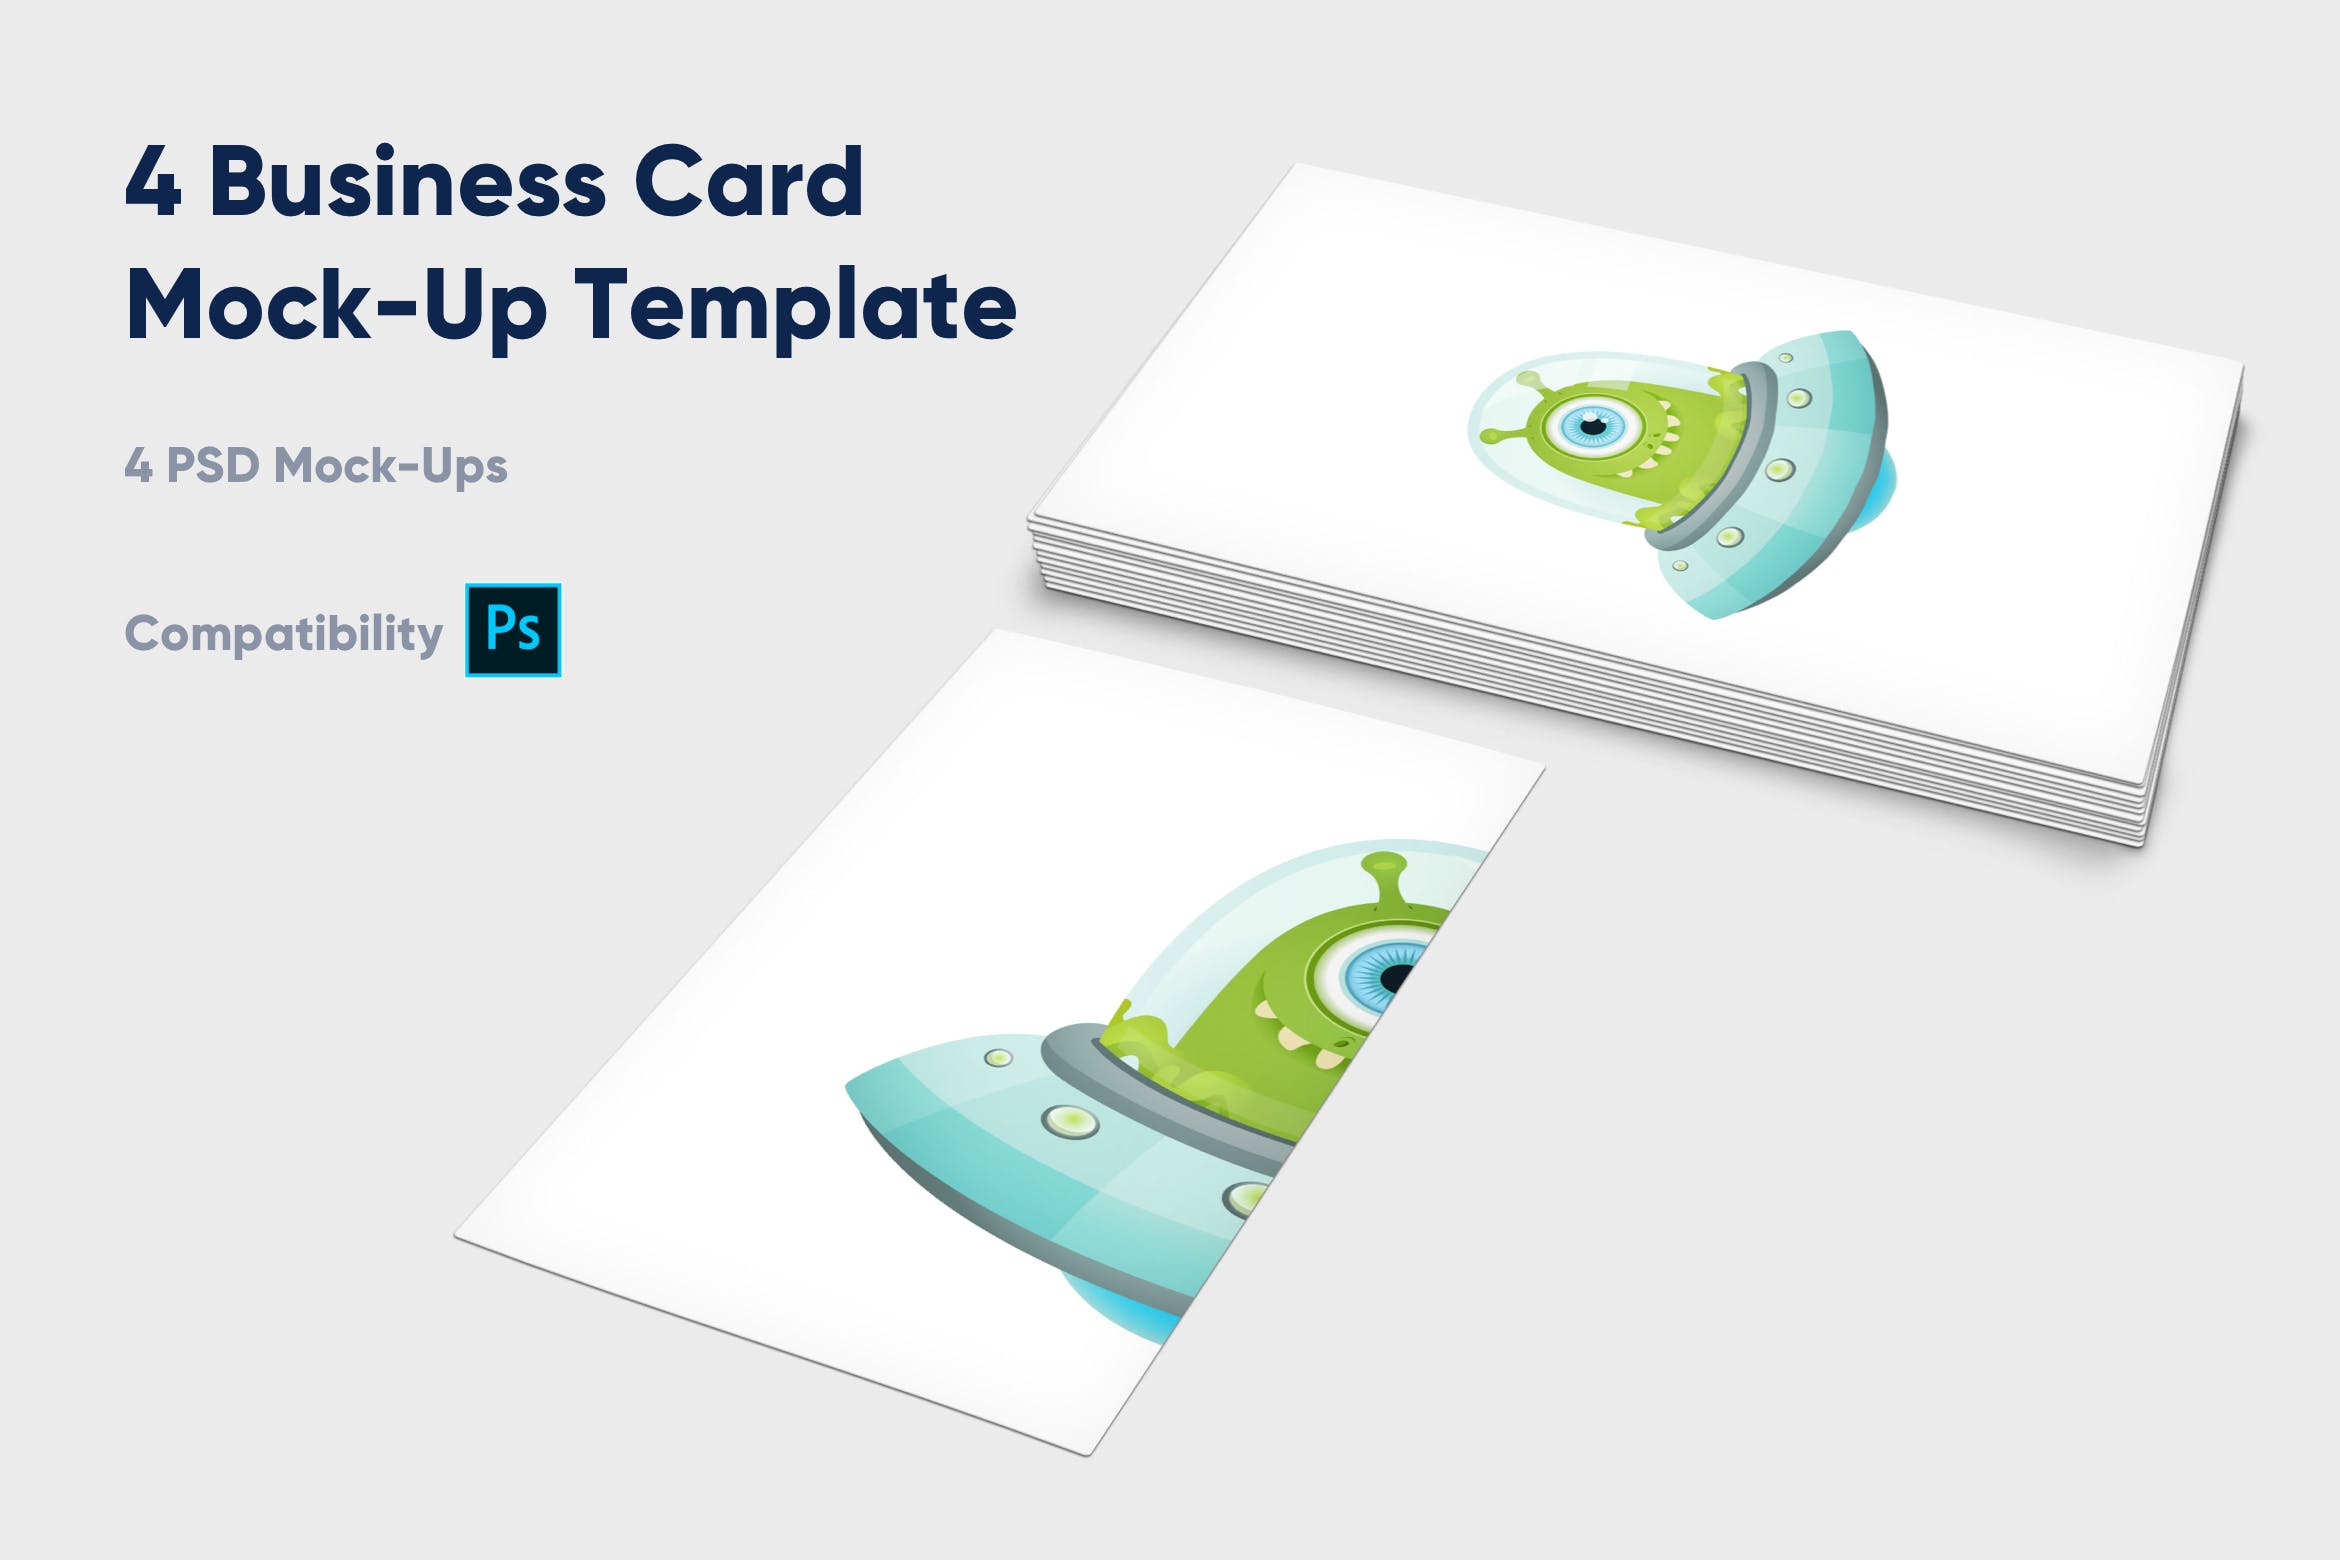 企业名片设计效果图展示样机大洋岛精选模板 4 Business Card Mock-Up Template插图